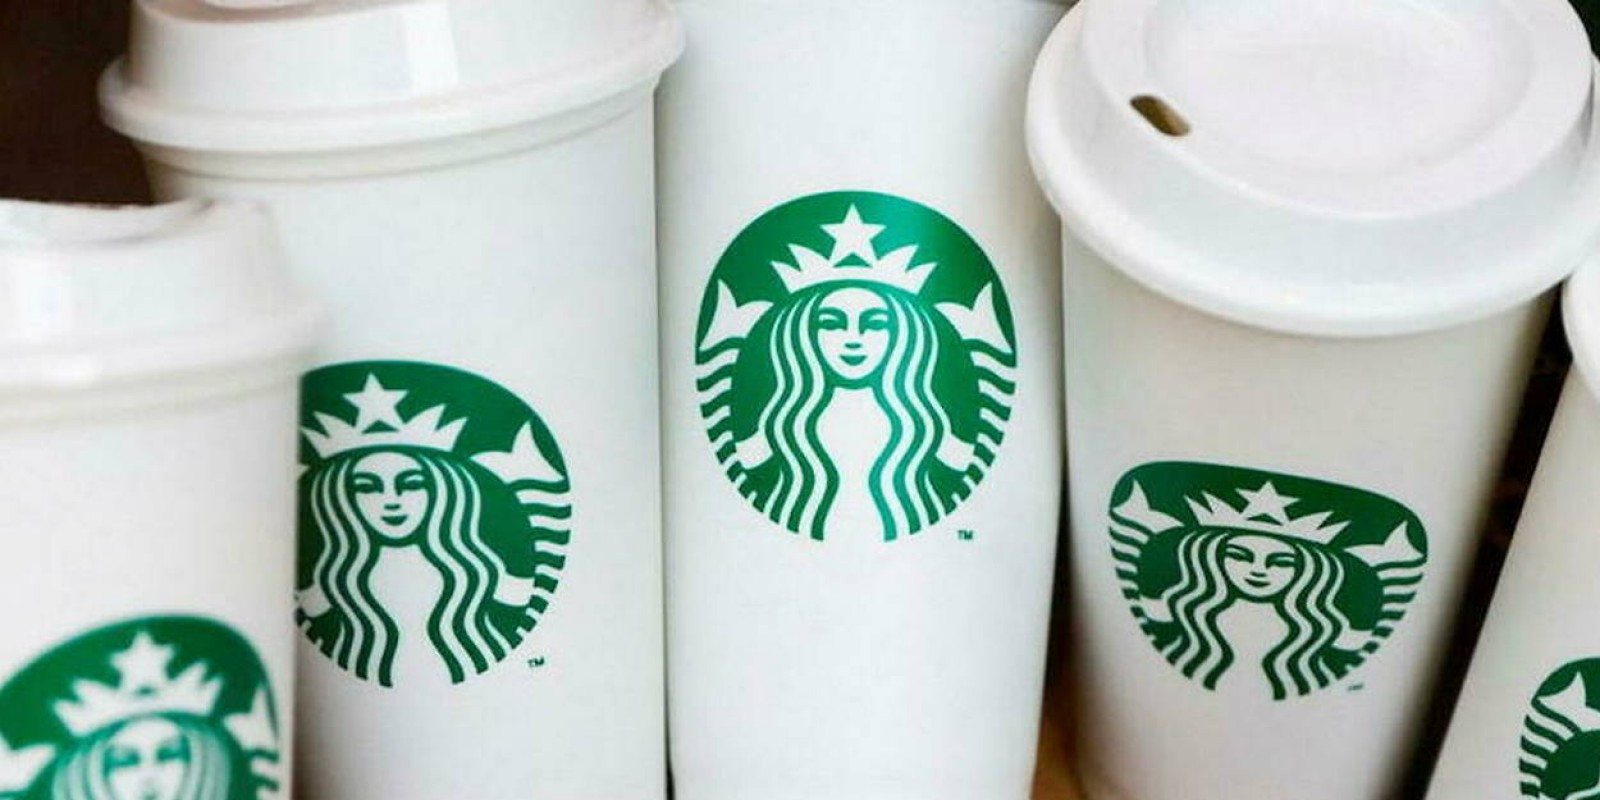 Des salariés de Starbucks en grève pour défendre la cause LGBT+